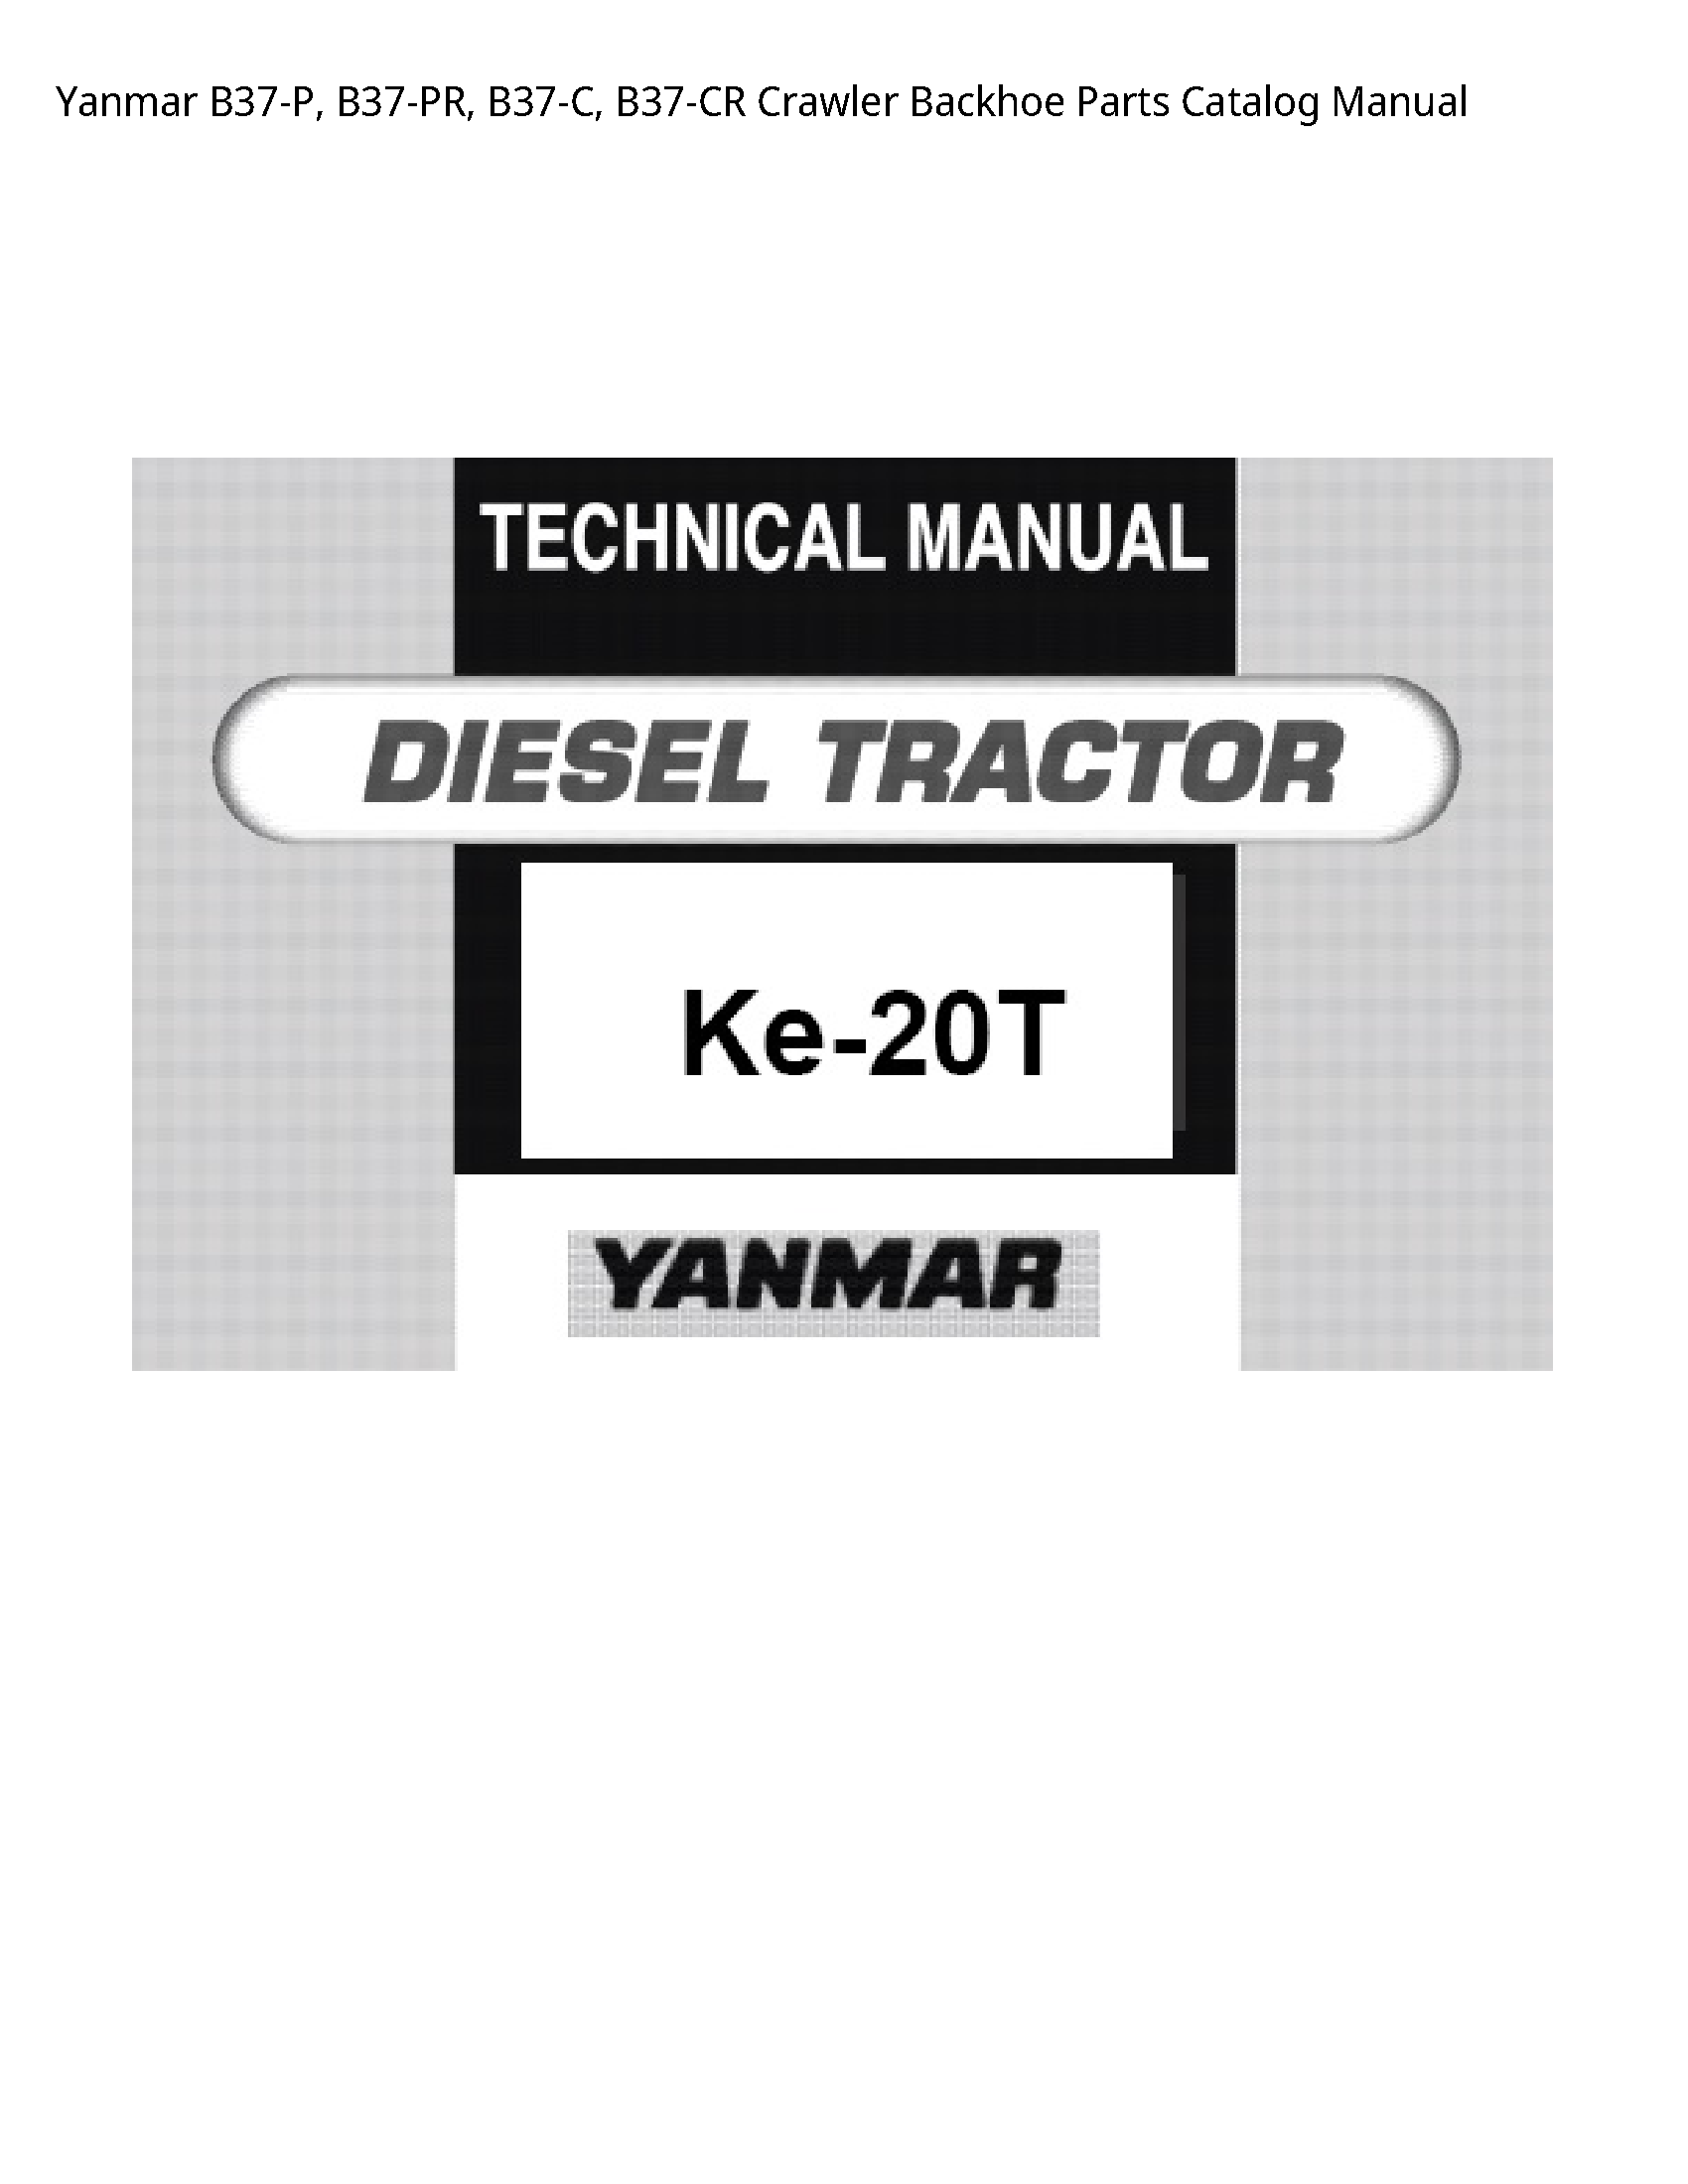 Yanmar B37-P Crawler Backhoe Parts Catalog manual